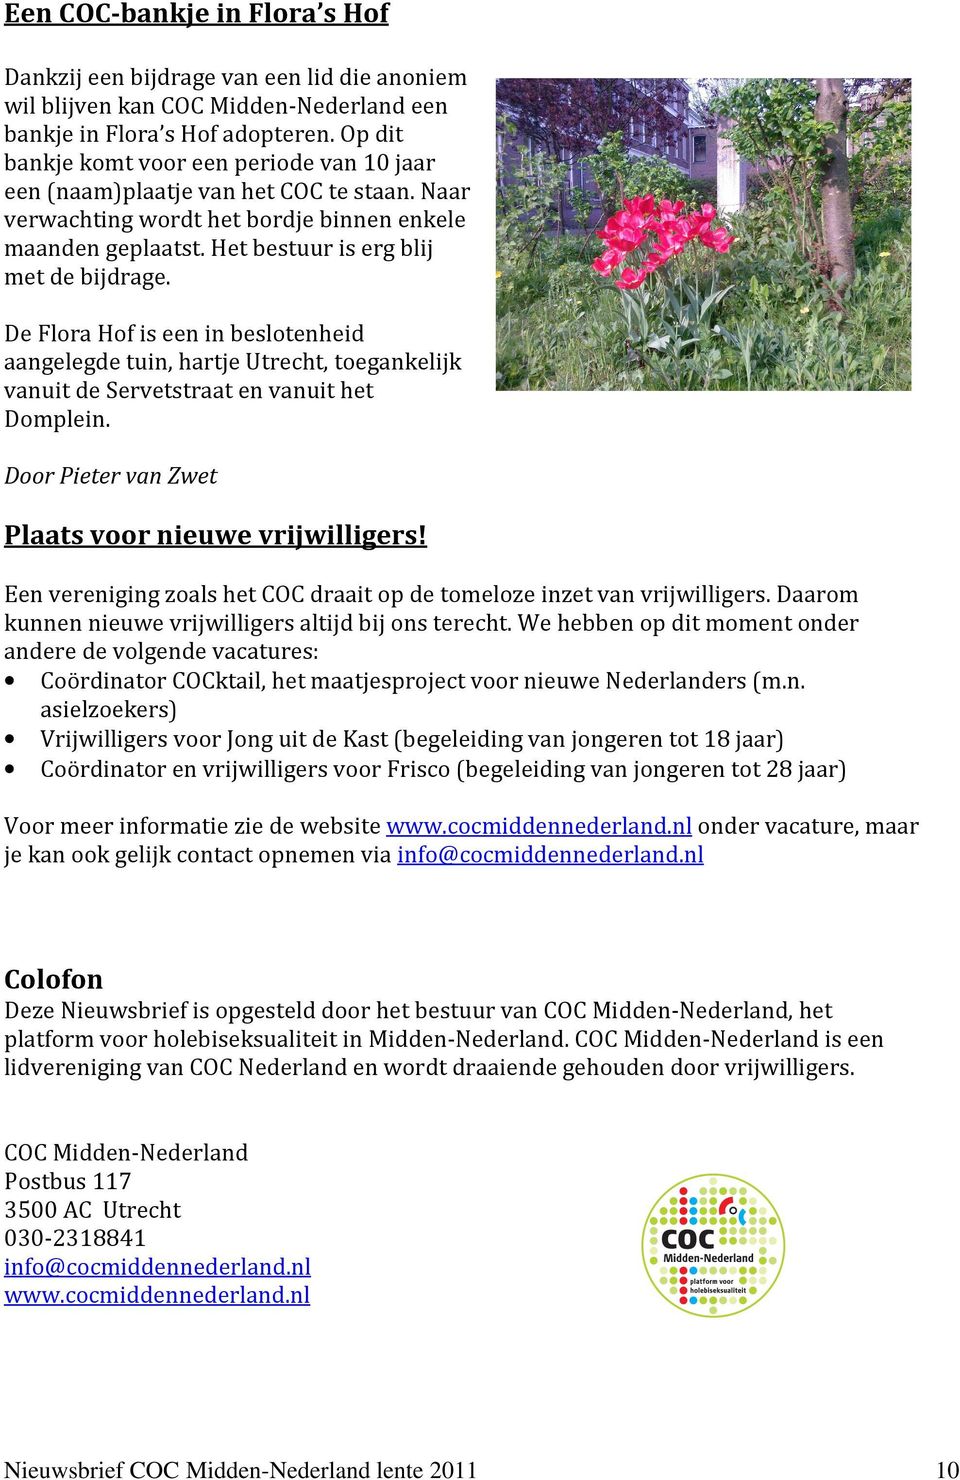 De Flora Hof is een in beslotenheid aangelegde tuin, hartje Utrecht, toegankelijk vanuit de Servetstraat en vanuit het Domplein. Door Pieter van Zwet Plaats voor nieuwe vrijwilligers!